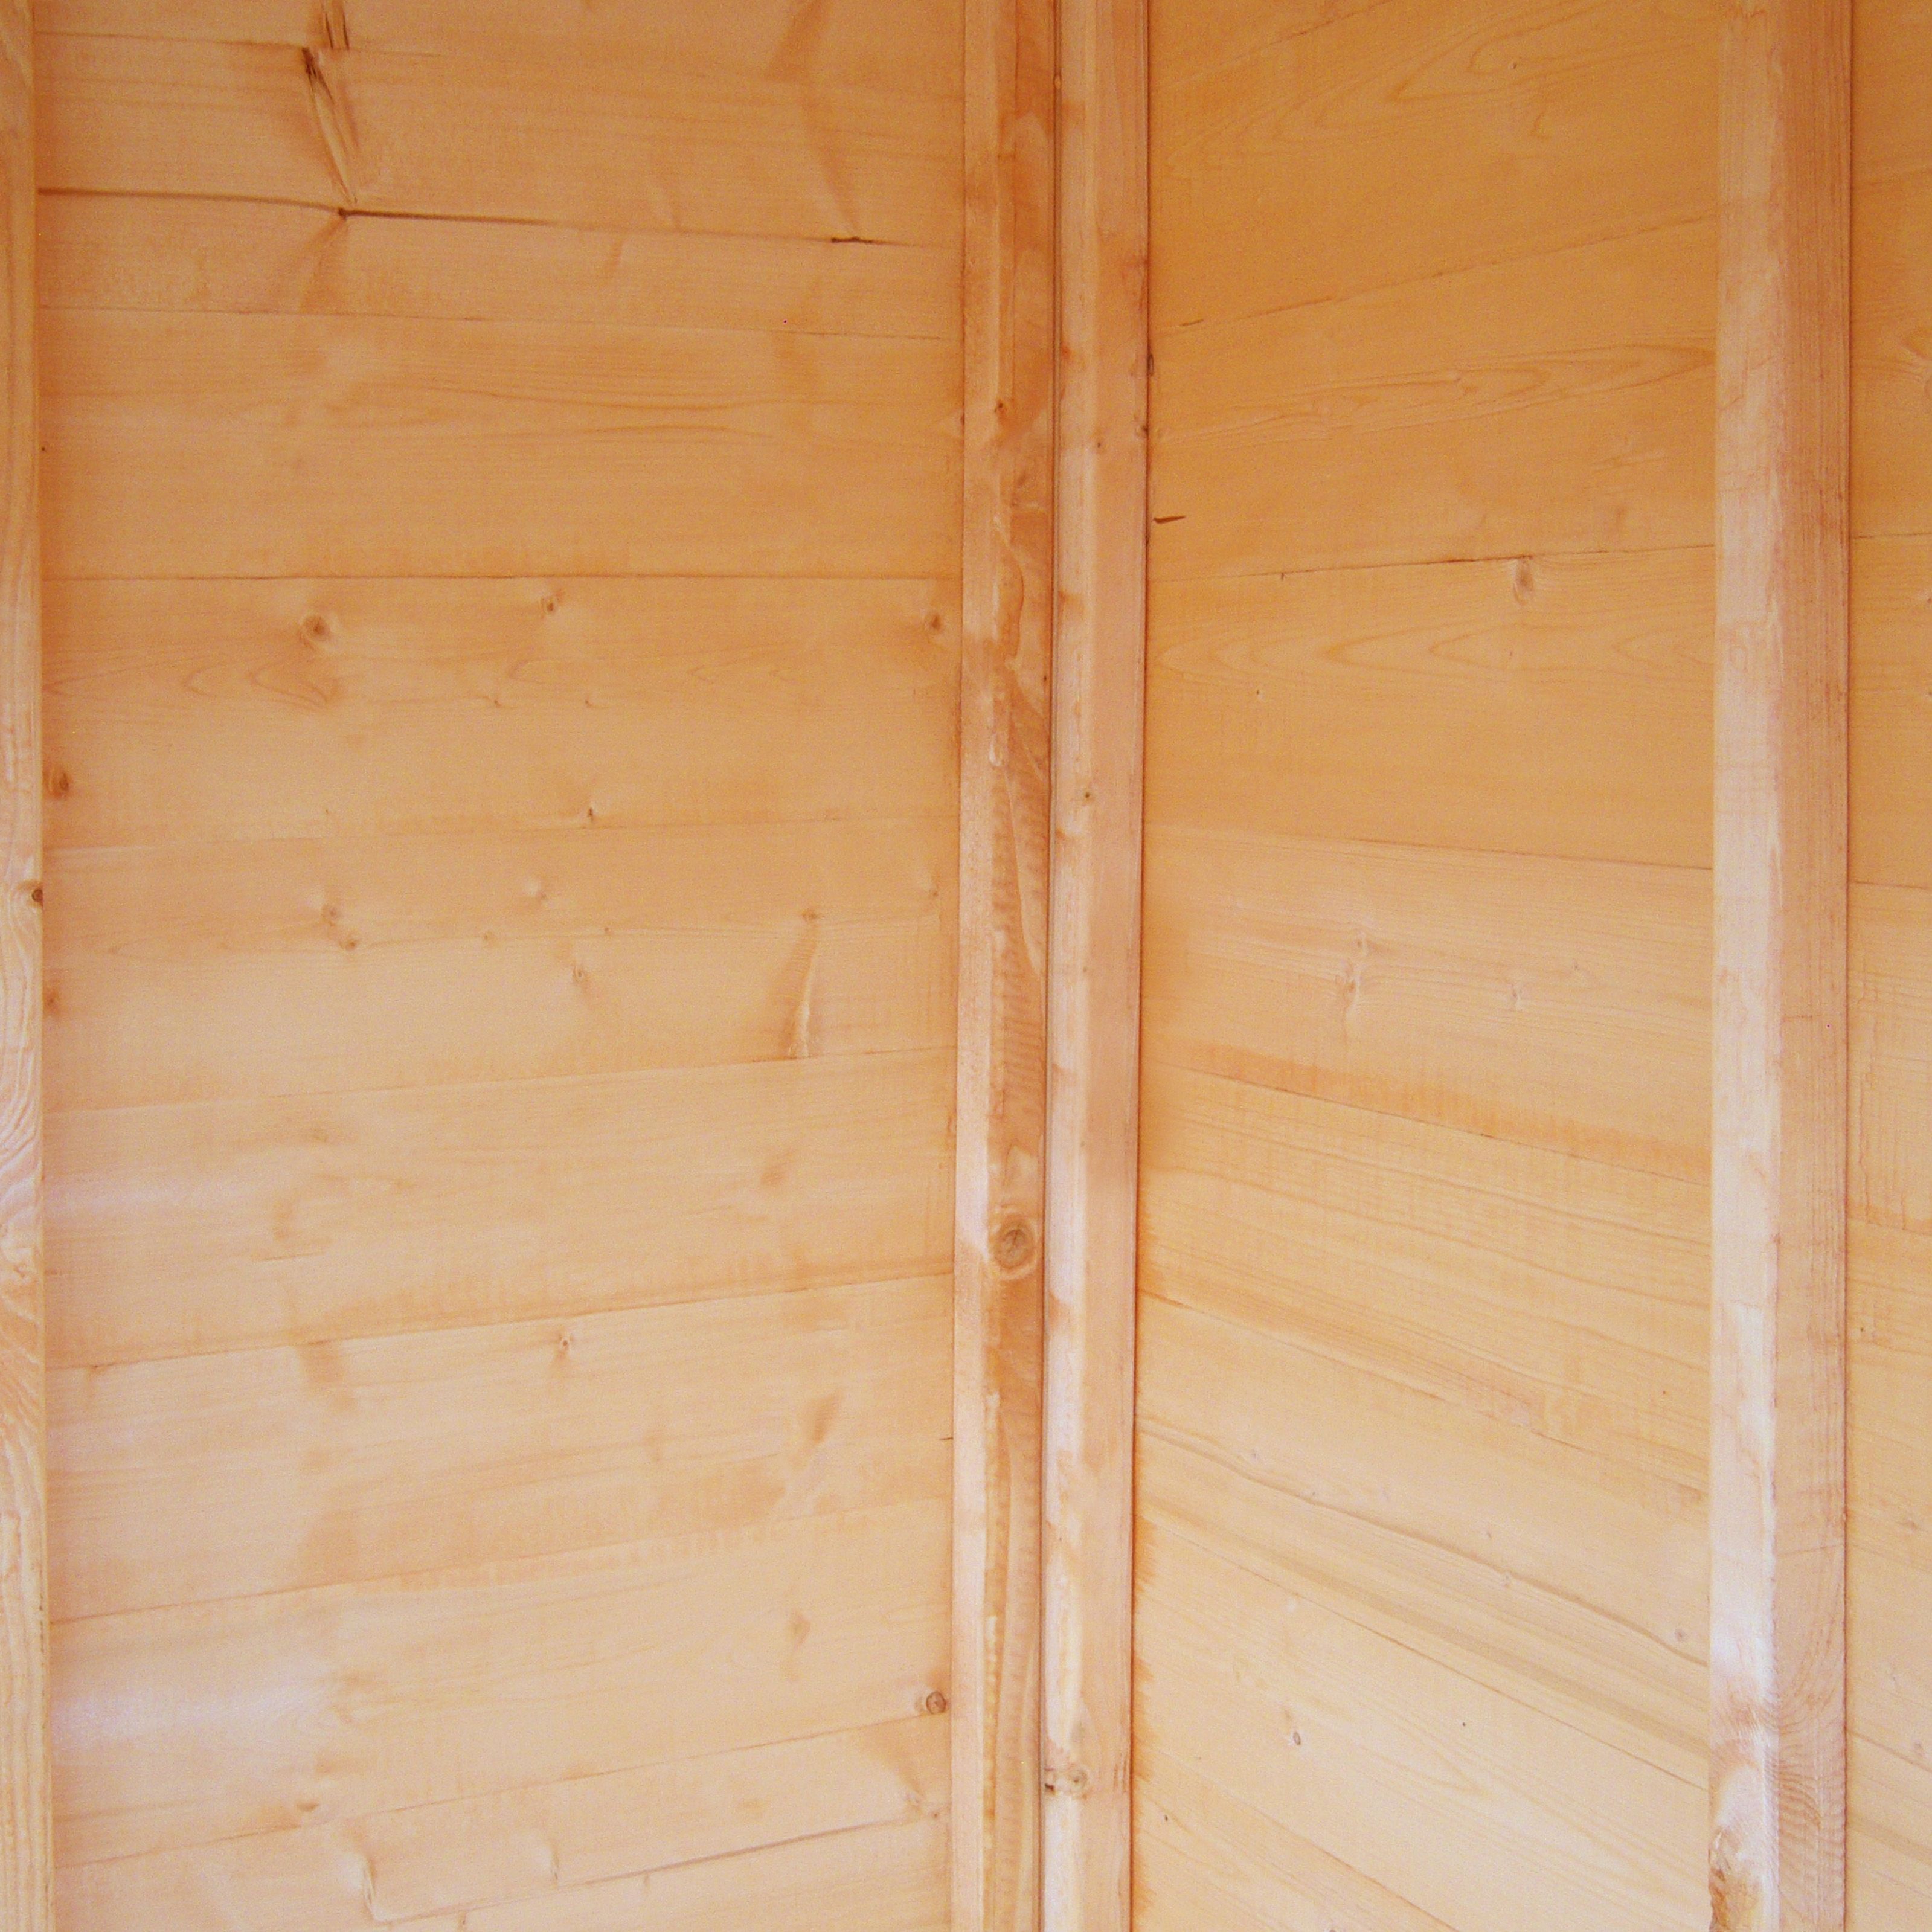 Shire Dutch 7x7 ft Dutch apex Wooden 2 door Shed with floor & 1 window